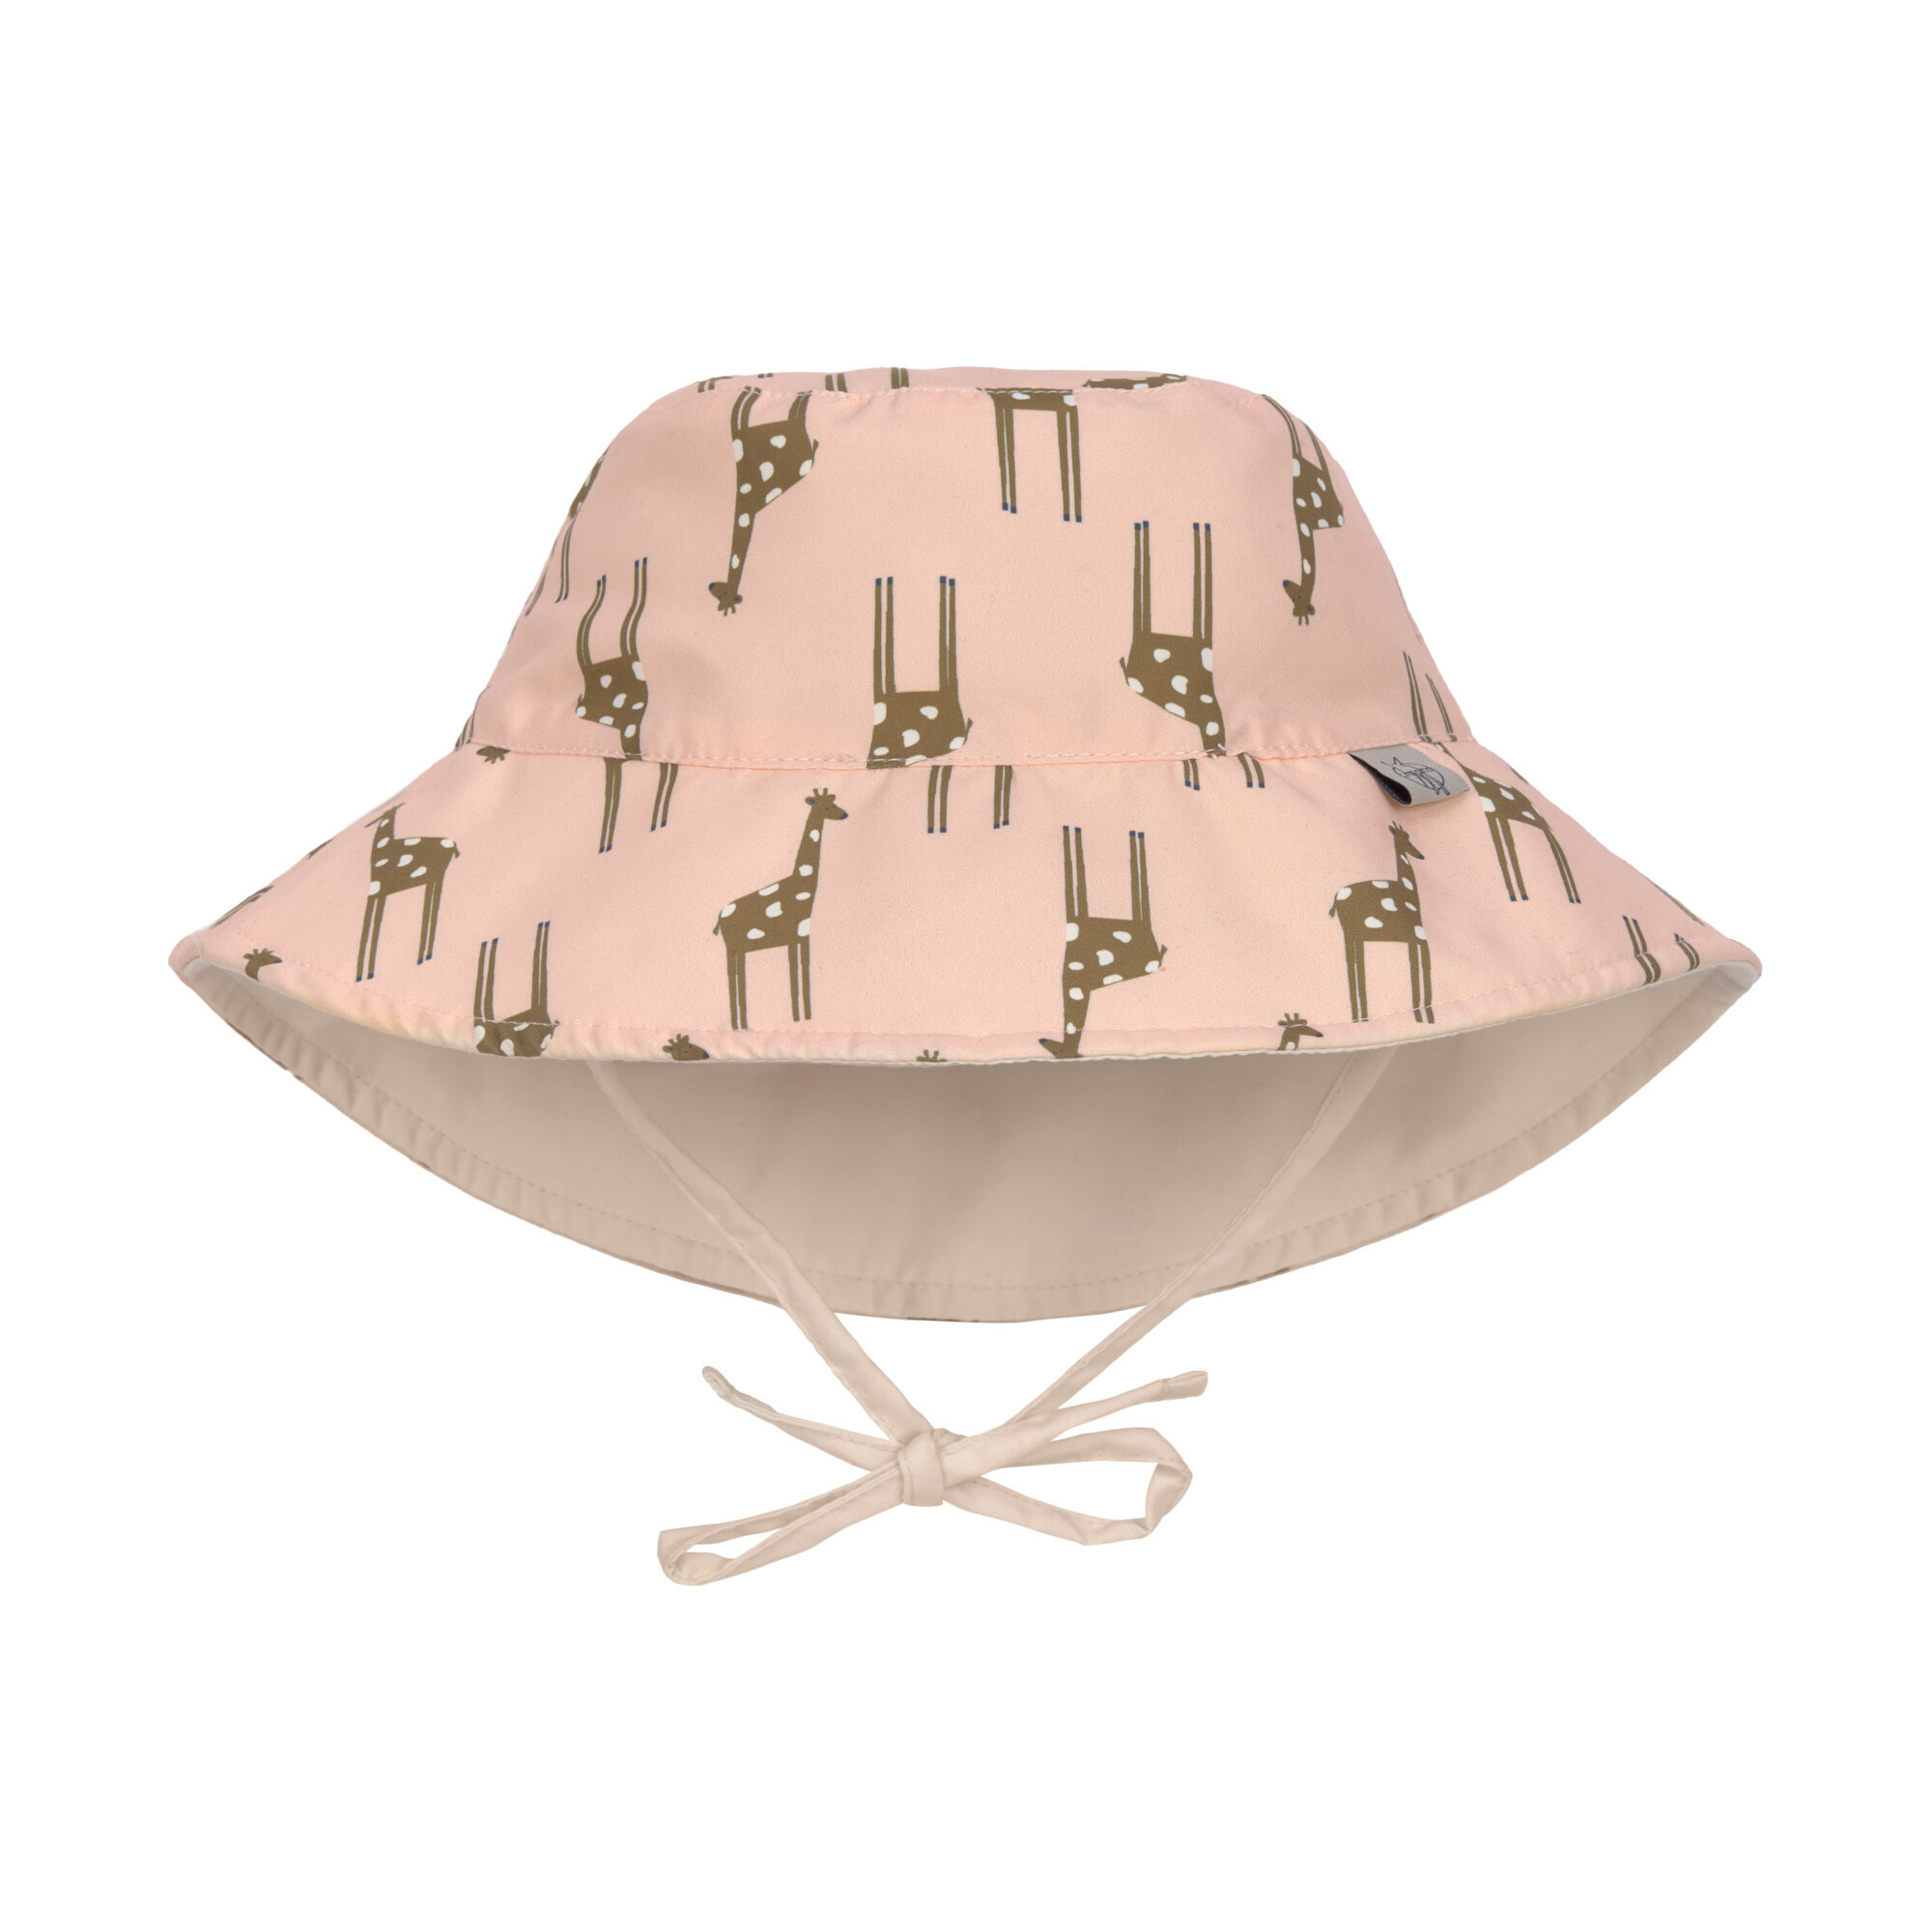 Lässig - UV-Sonnenschutz Eimer Hut für Kinder - Giraffe - Rose